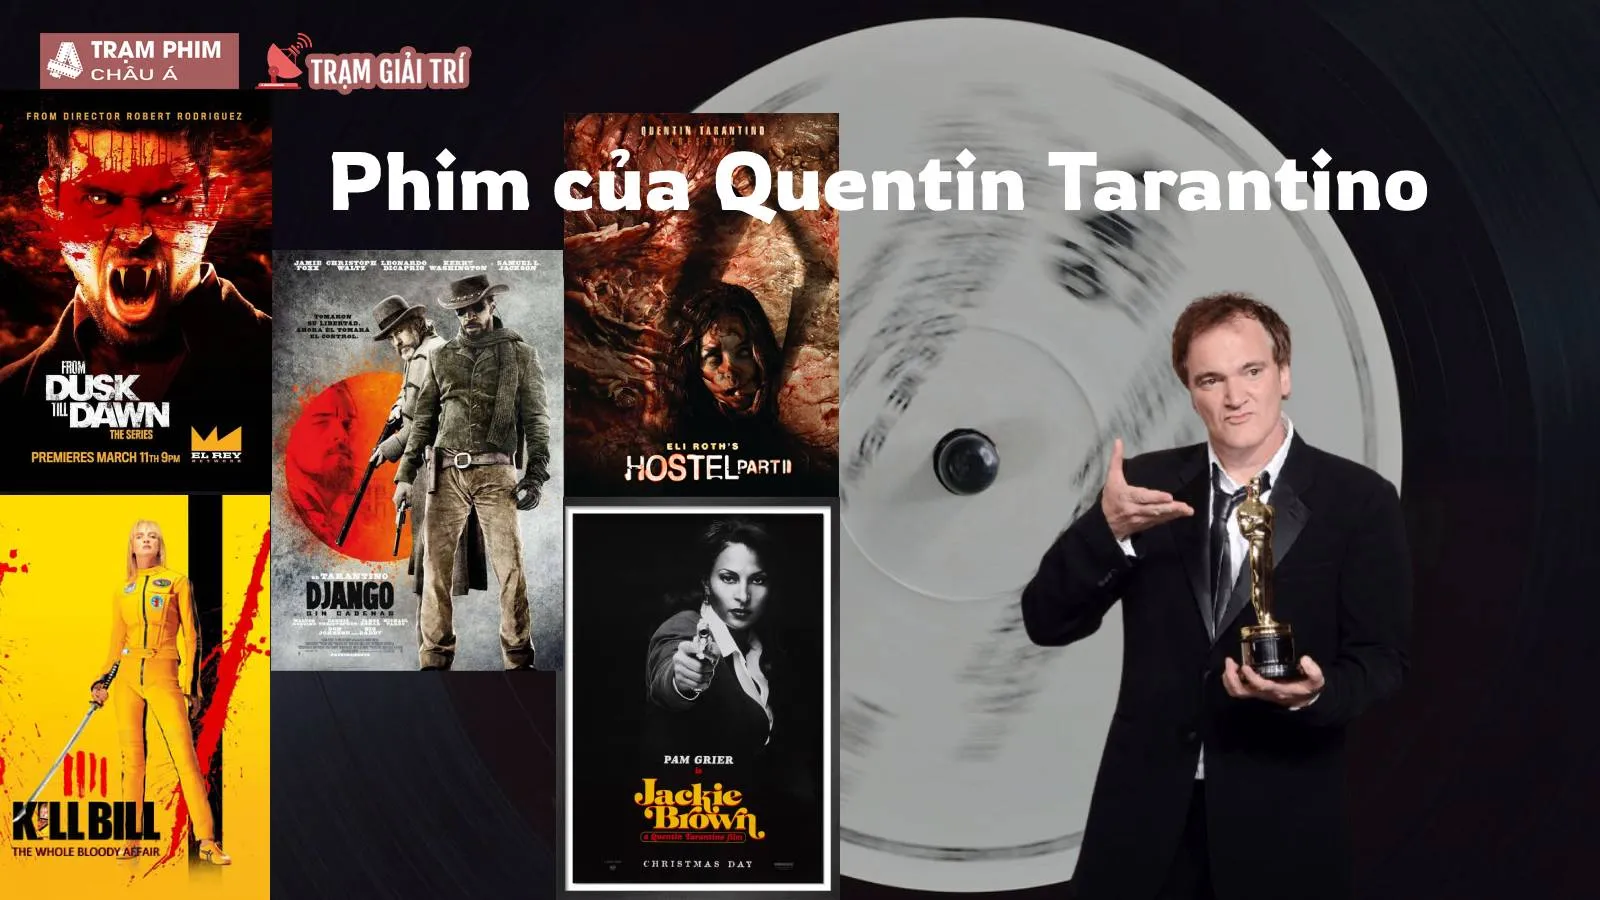 Nhìn lại loạt phim của Quentin Tarantino, tài năng kiệt xuất của điện ảnh mọi thời đại